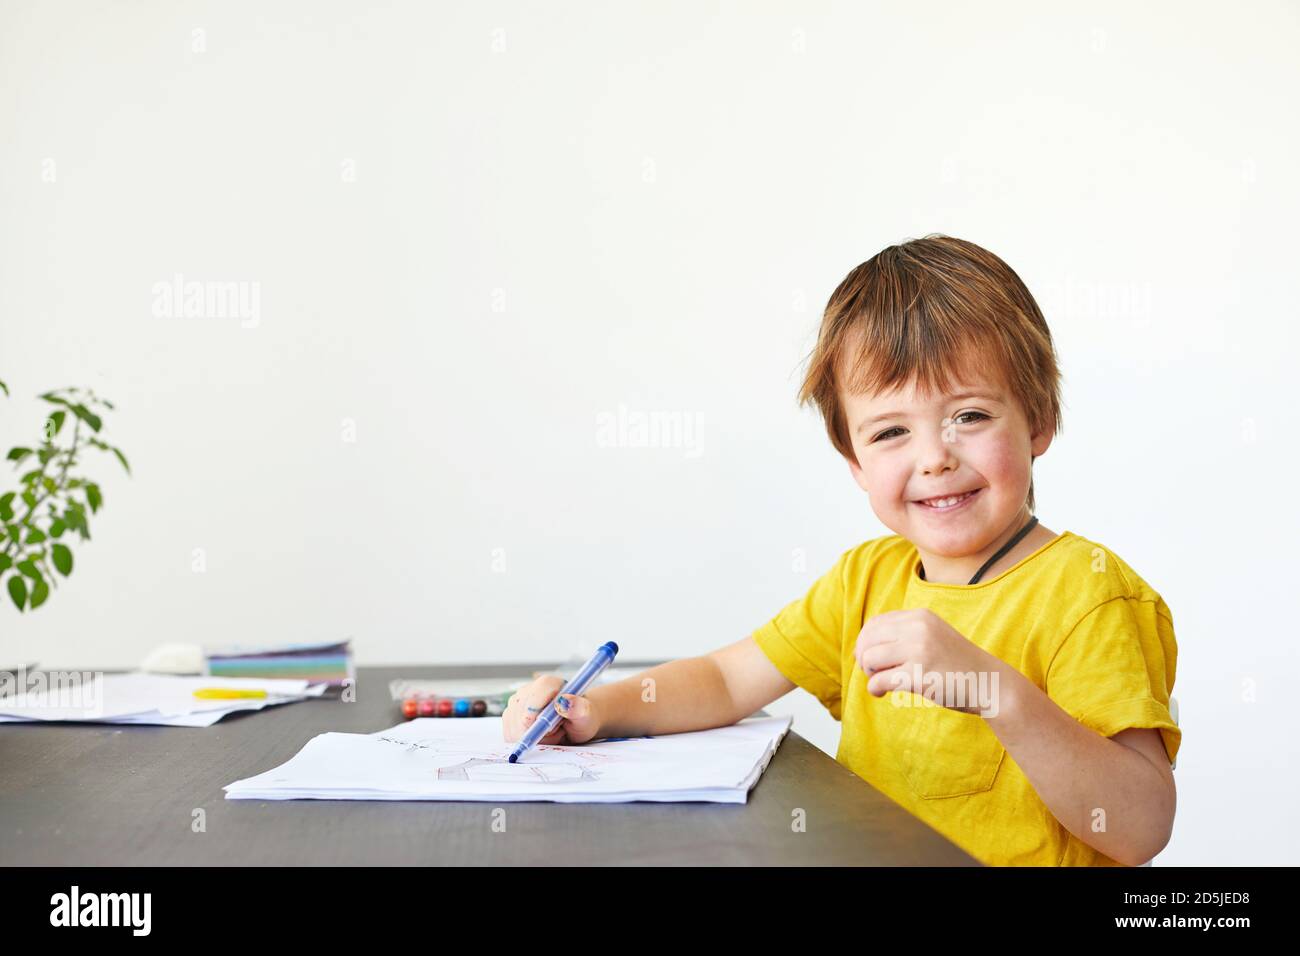 Happy kid drawing in sketchbook Stock Photo